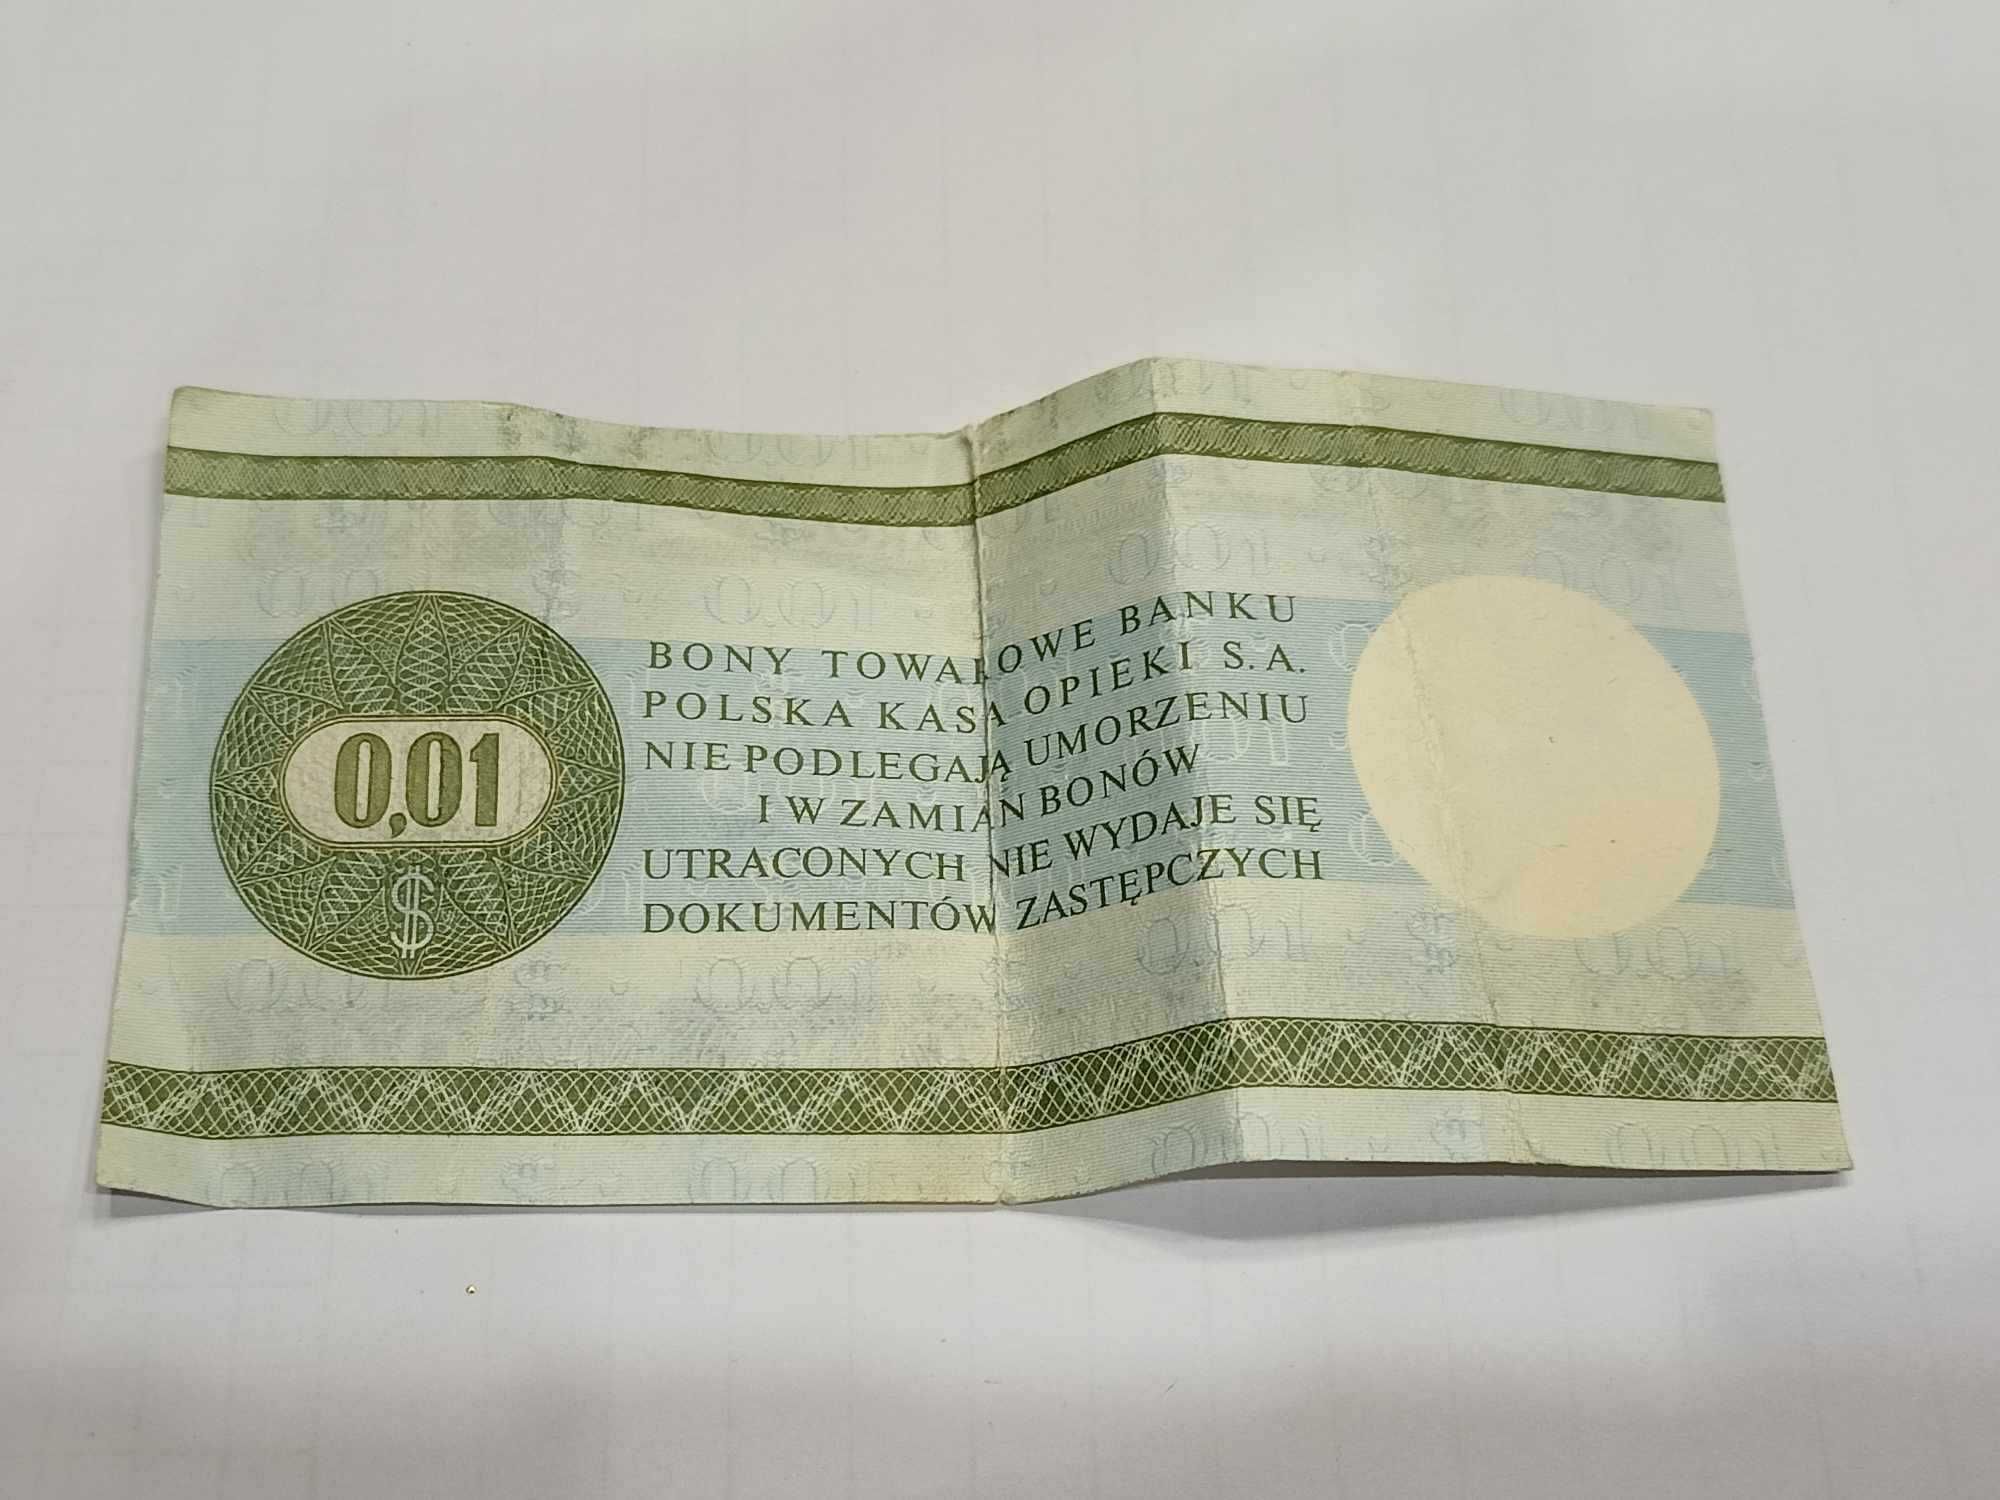 Bon towarowy jeden cent 1979